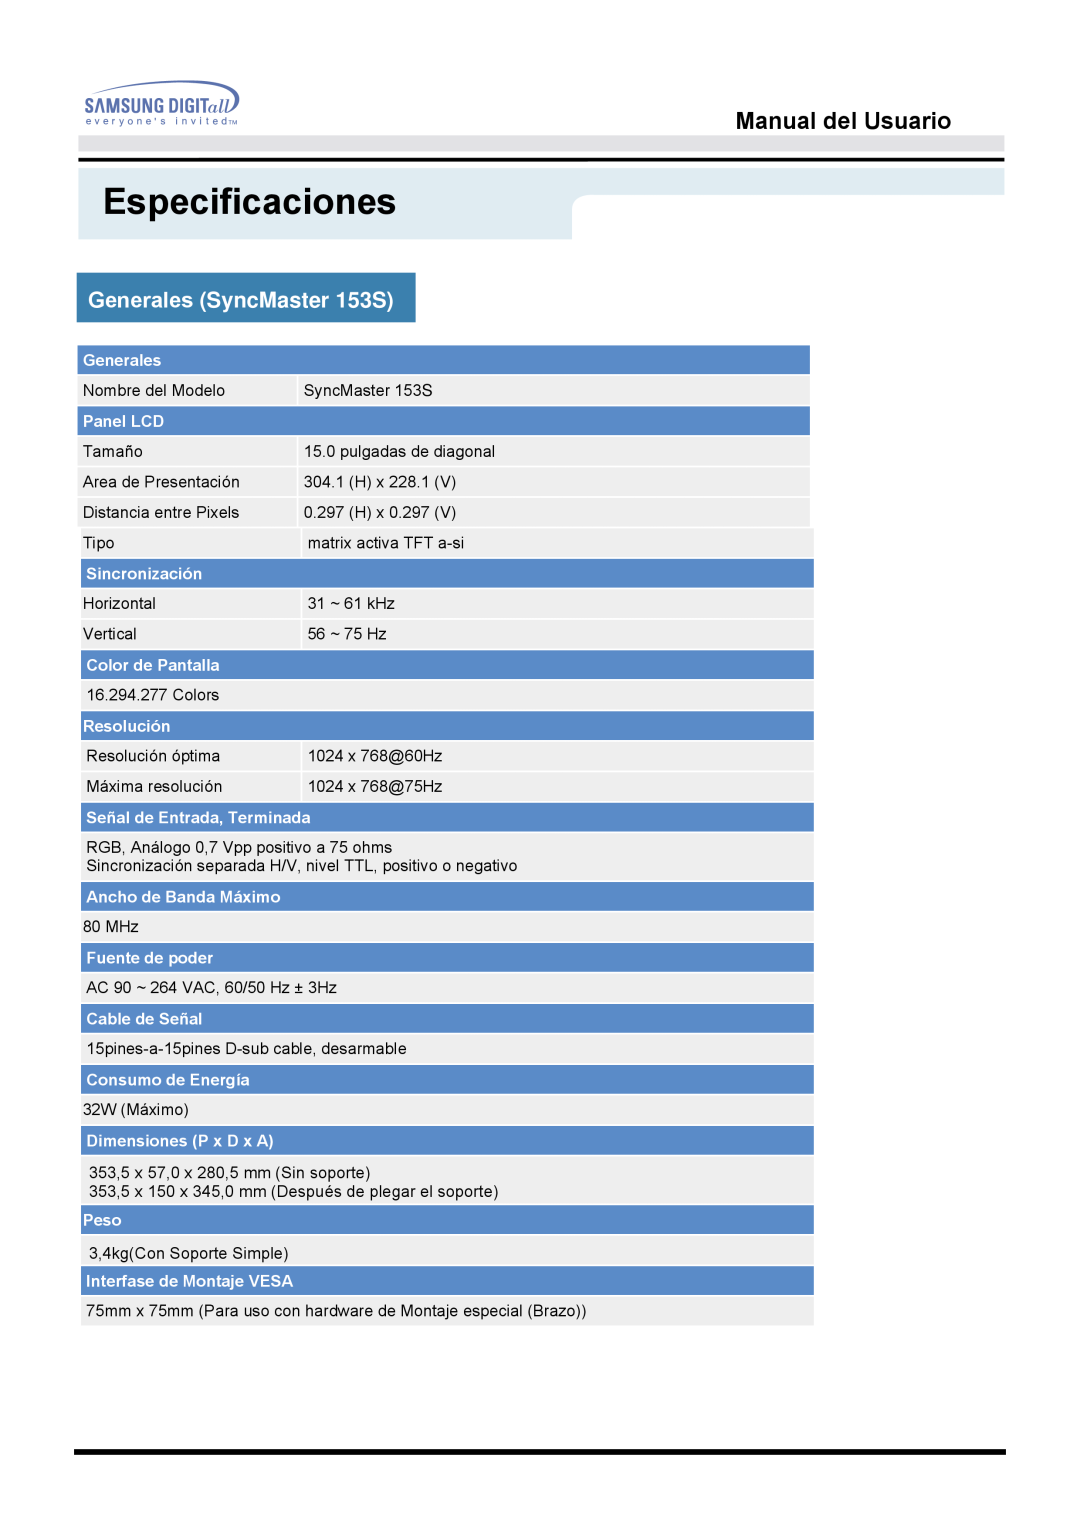 Samsung manual Especificaciones, Generales SyncMaster 153S, Manual del Usuario 